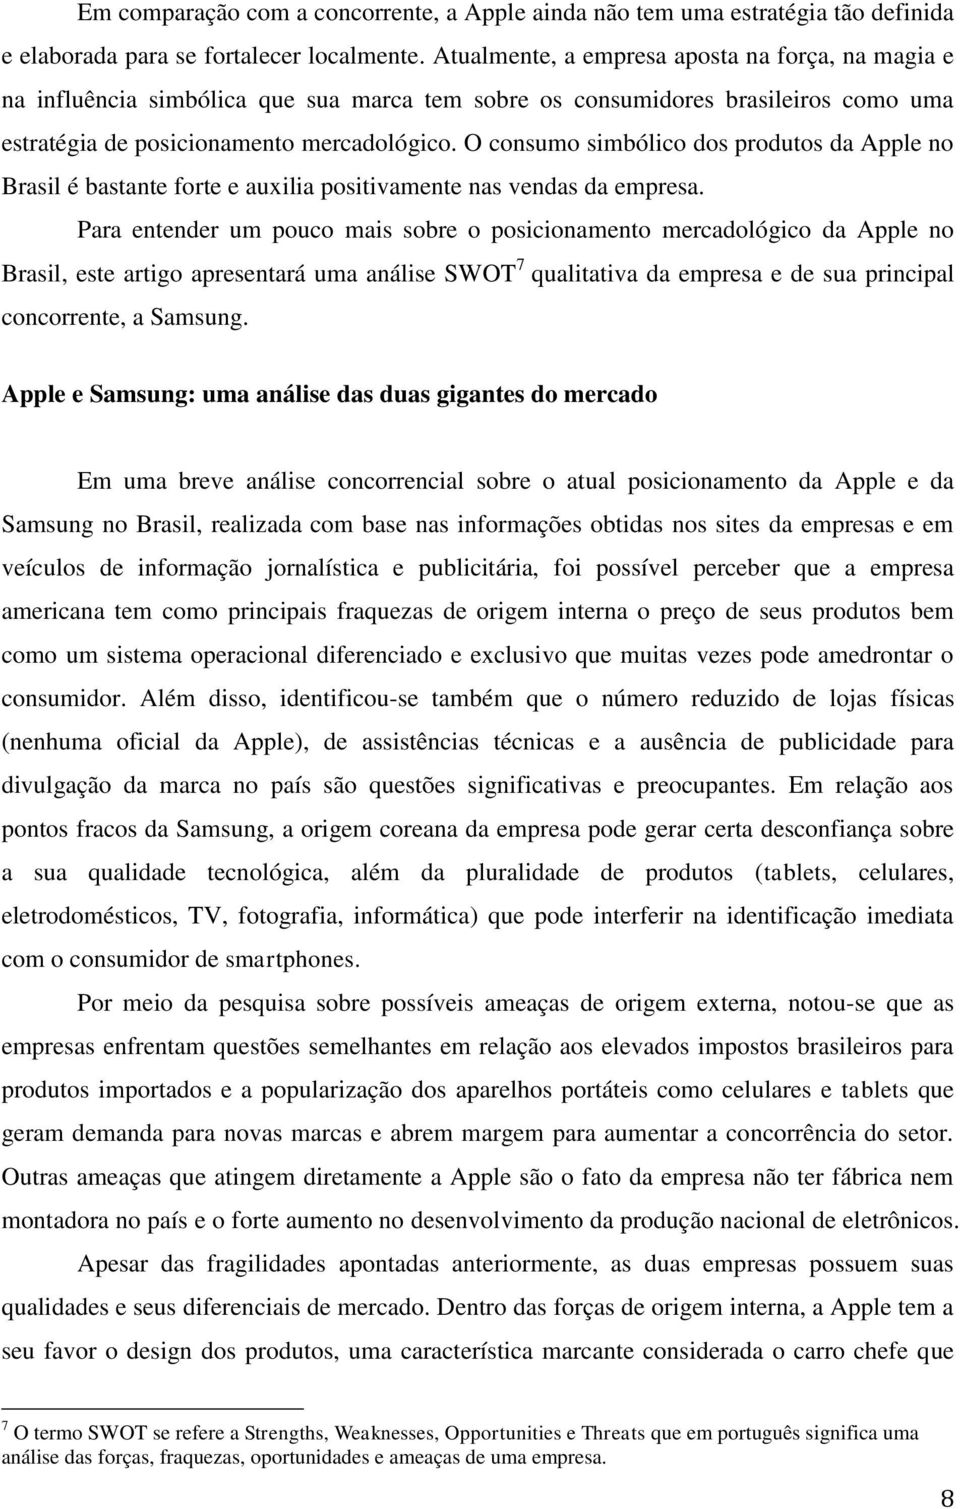 O consumo simbólico dos produtos da Apple no Brasil é bastante forte e auxilia positivamente nas vendas da empresa.